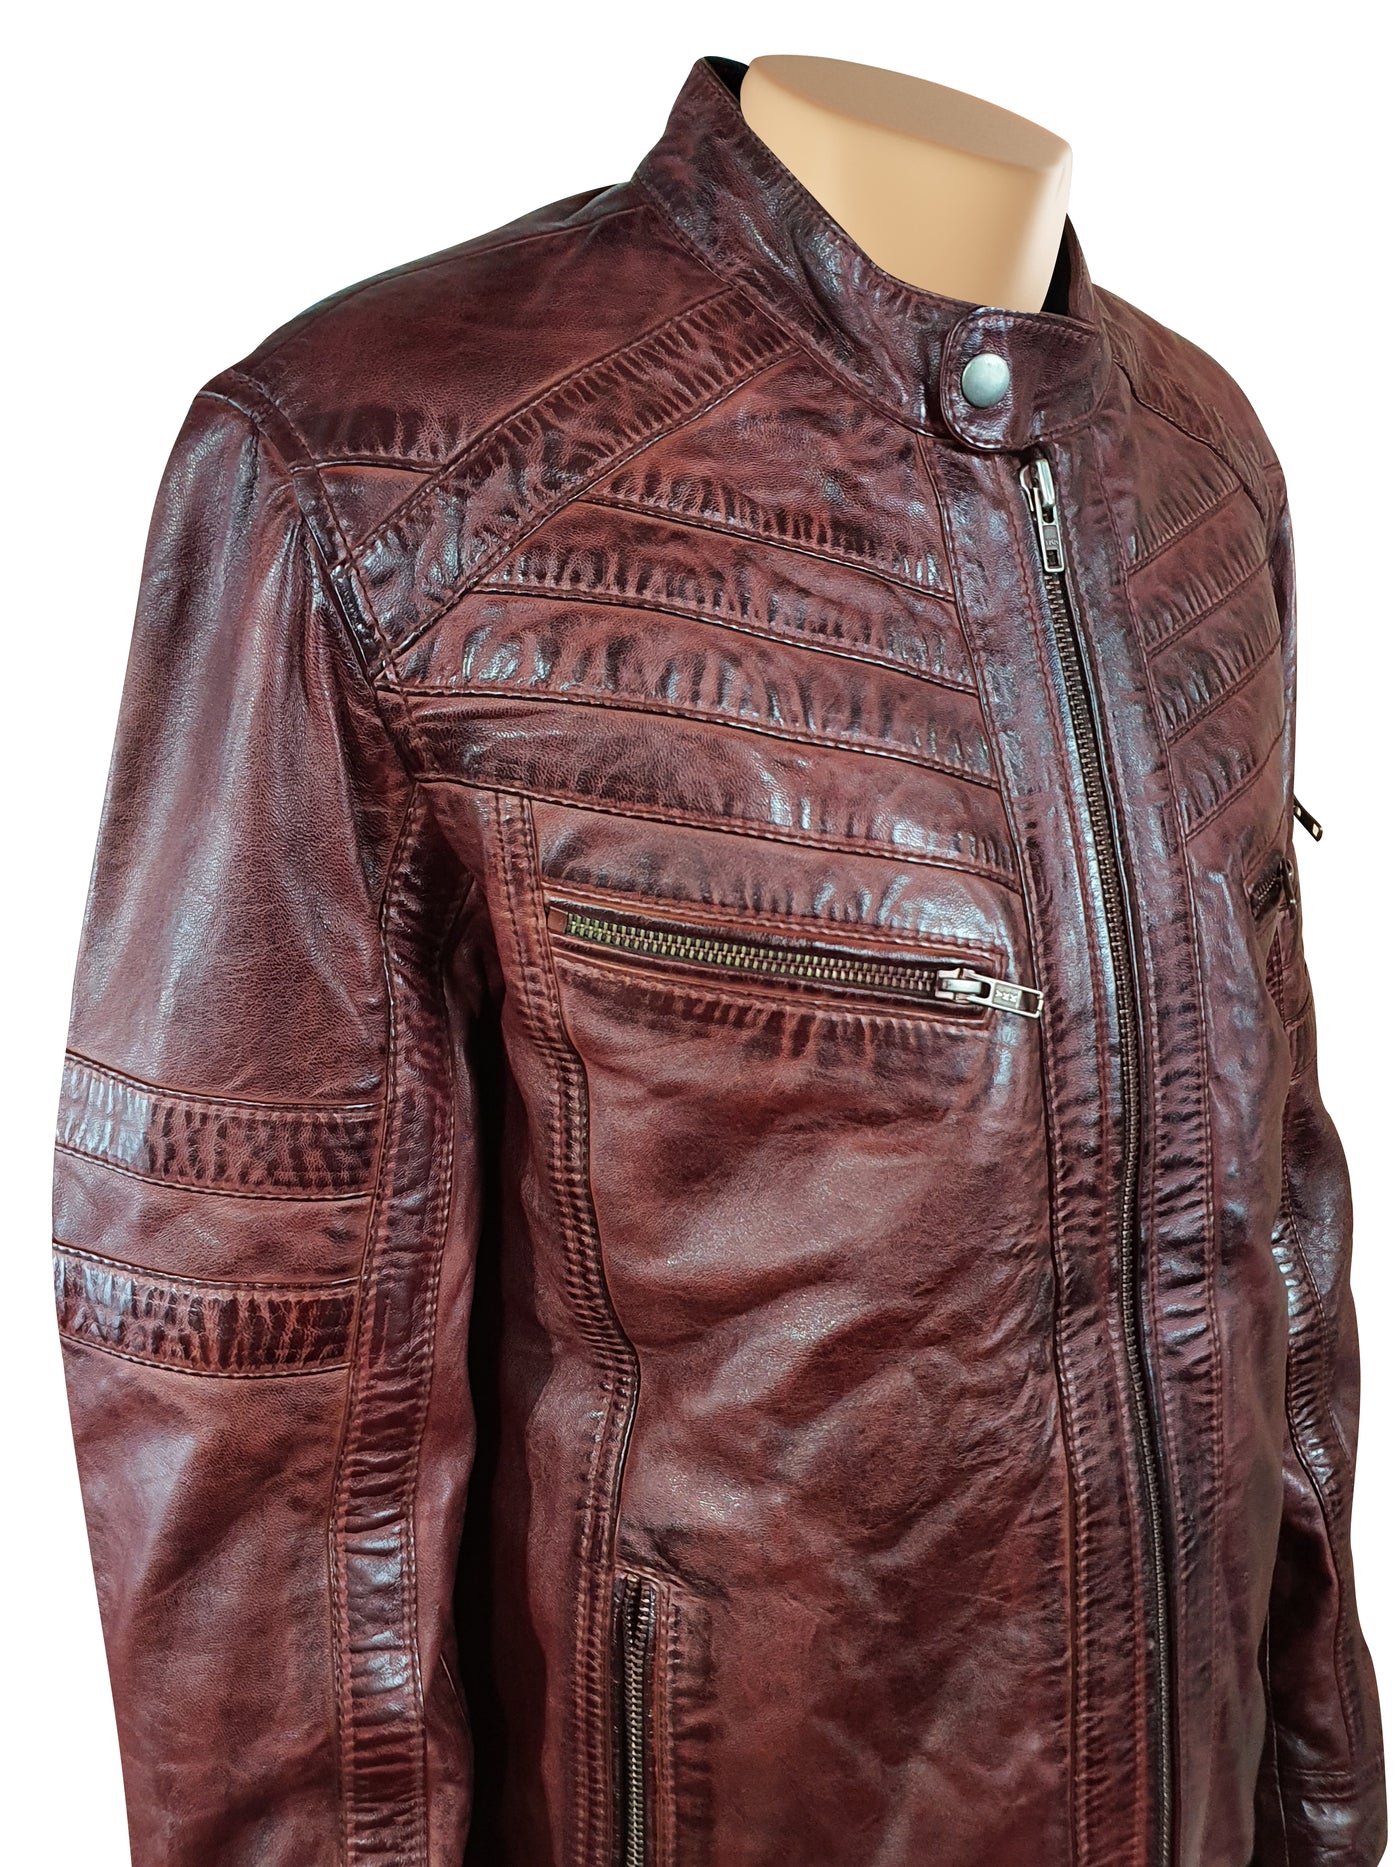 Burnished Burgundy Leather Jacket by Charley Ellwood